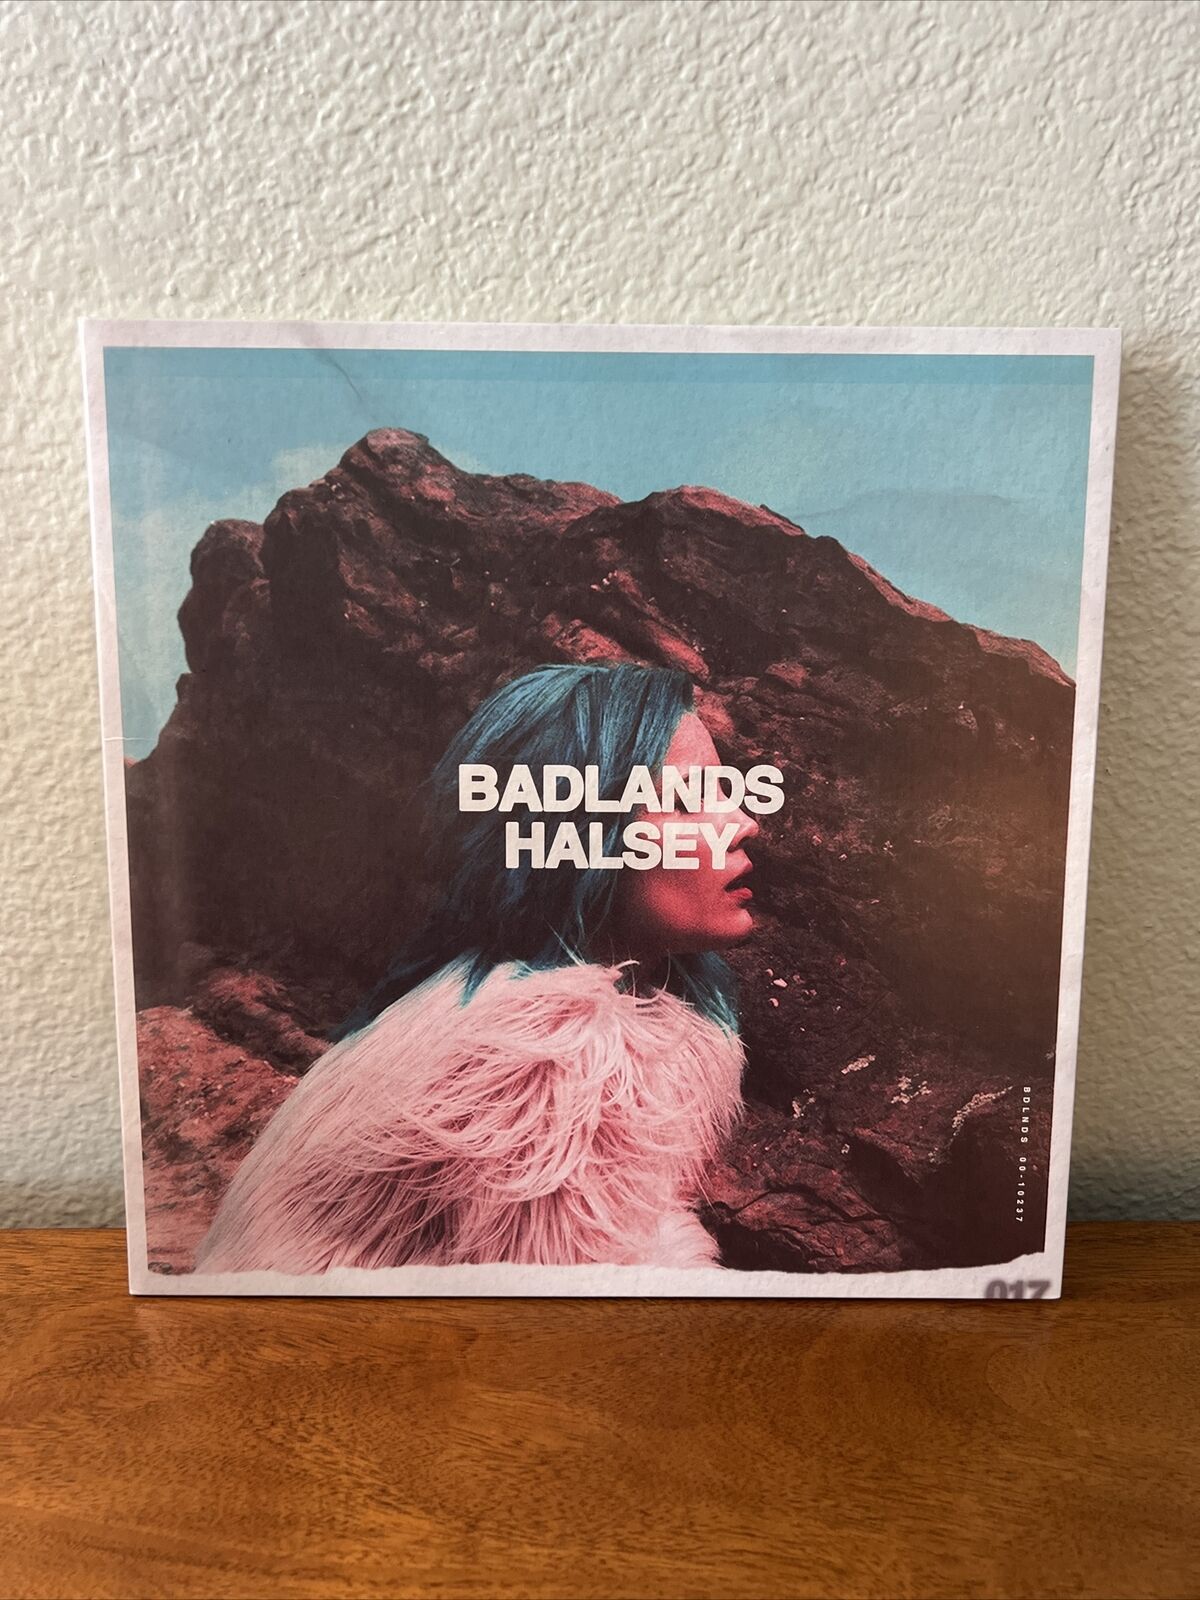 (PINK VINYL) Halsey - Badlands (2015) Astralwerks Gatefold (NEVER PLAYED)